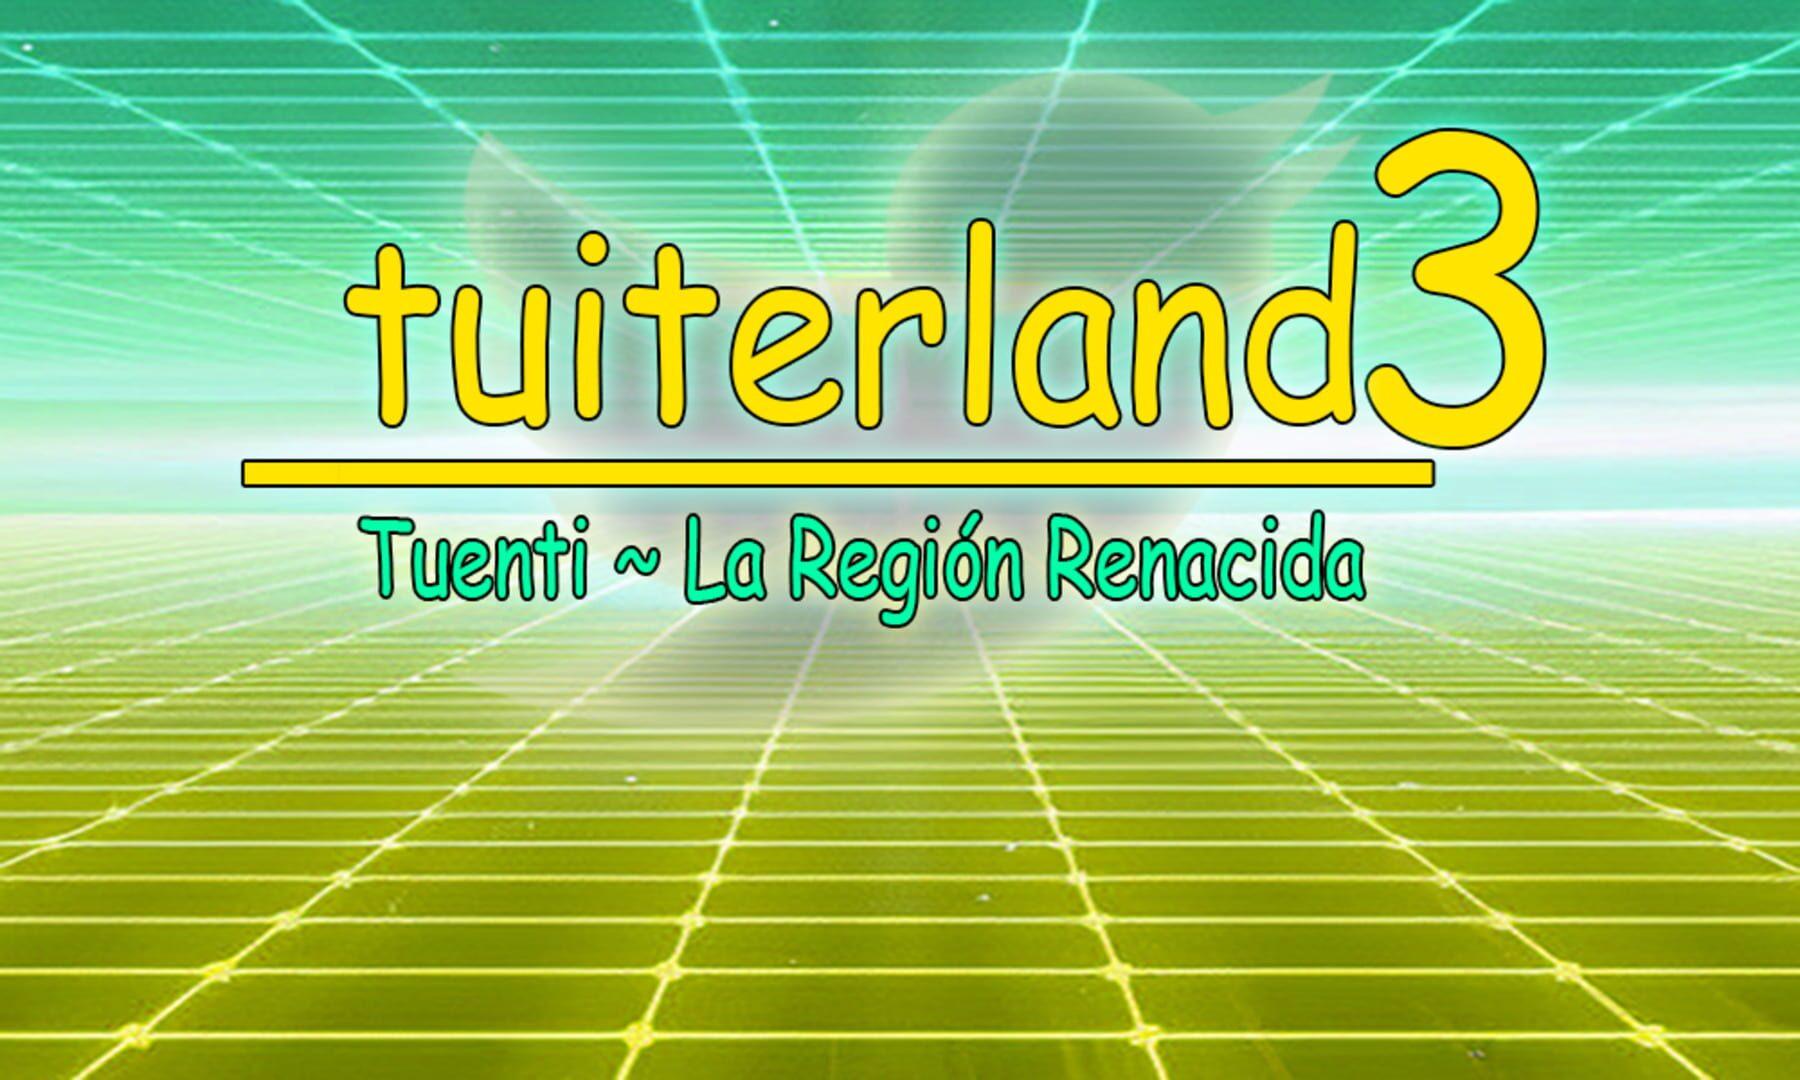 Tuiterland 3: Tuenti - La Región Renacida cover art